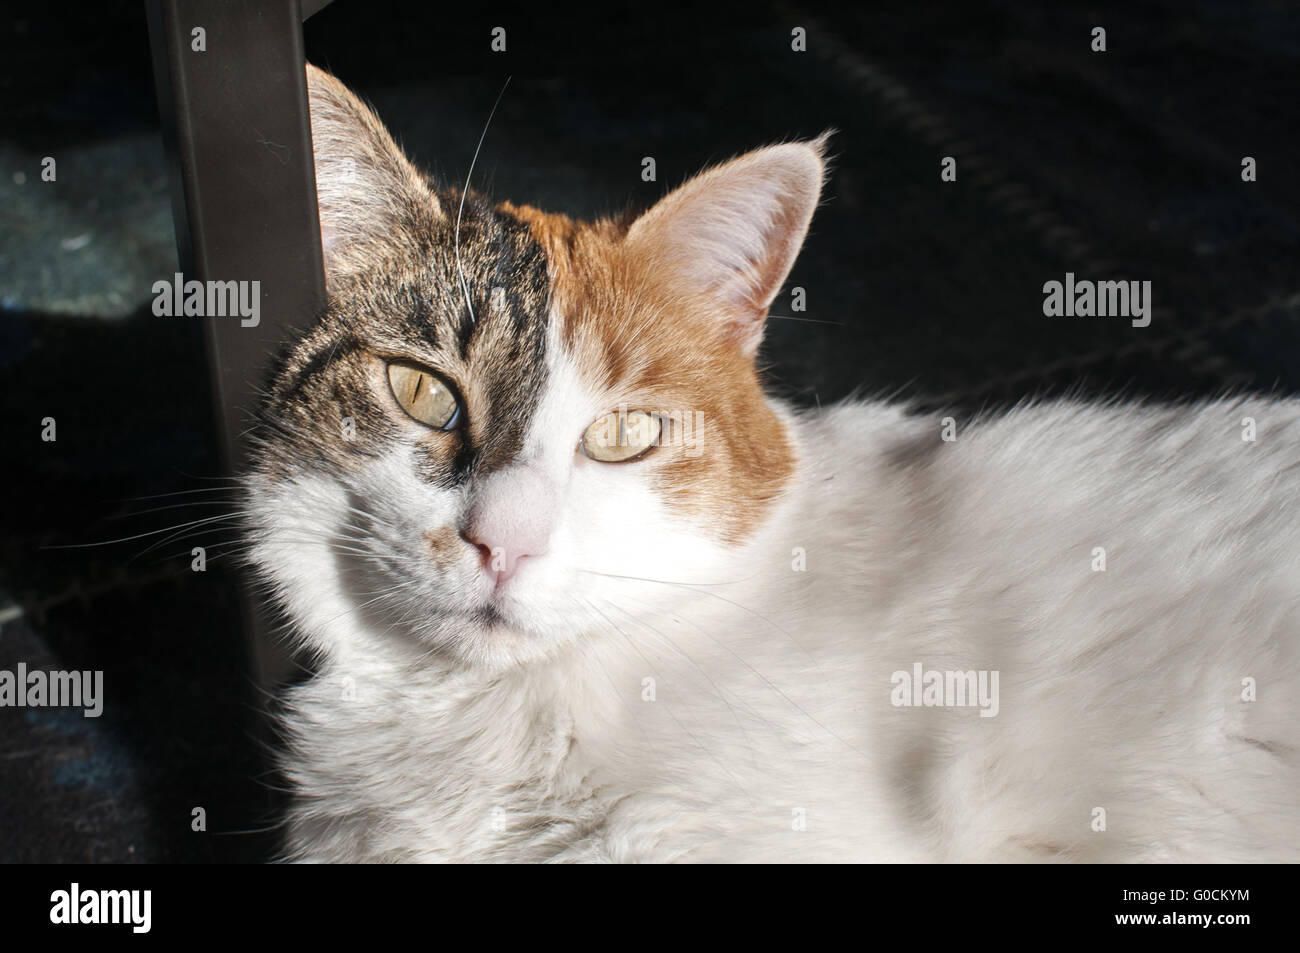 Testa di gatto estremamente closeup su home contesto Foto Stock